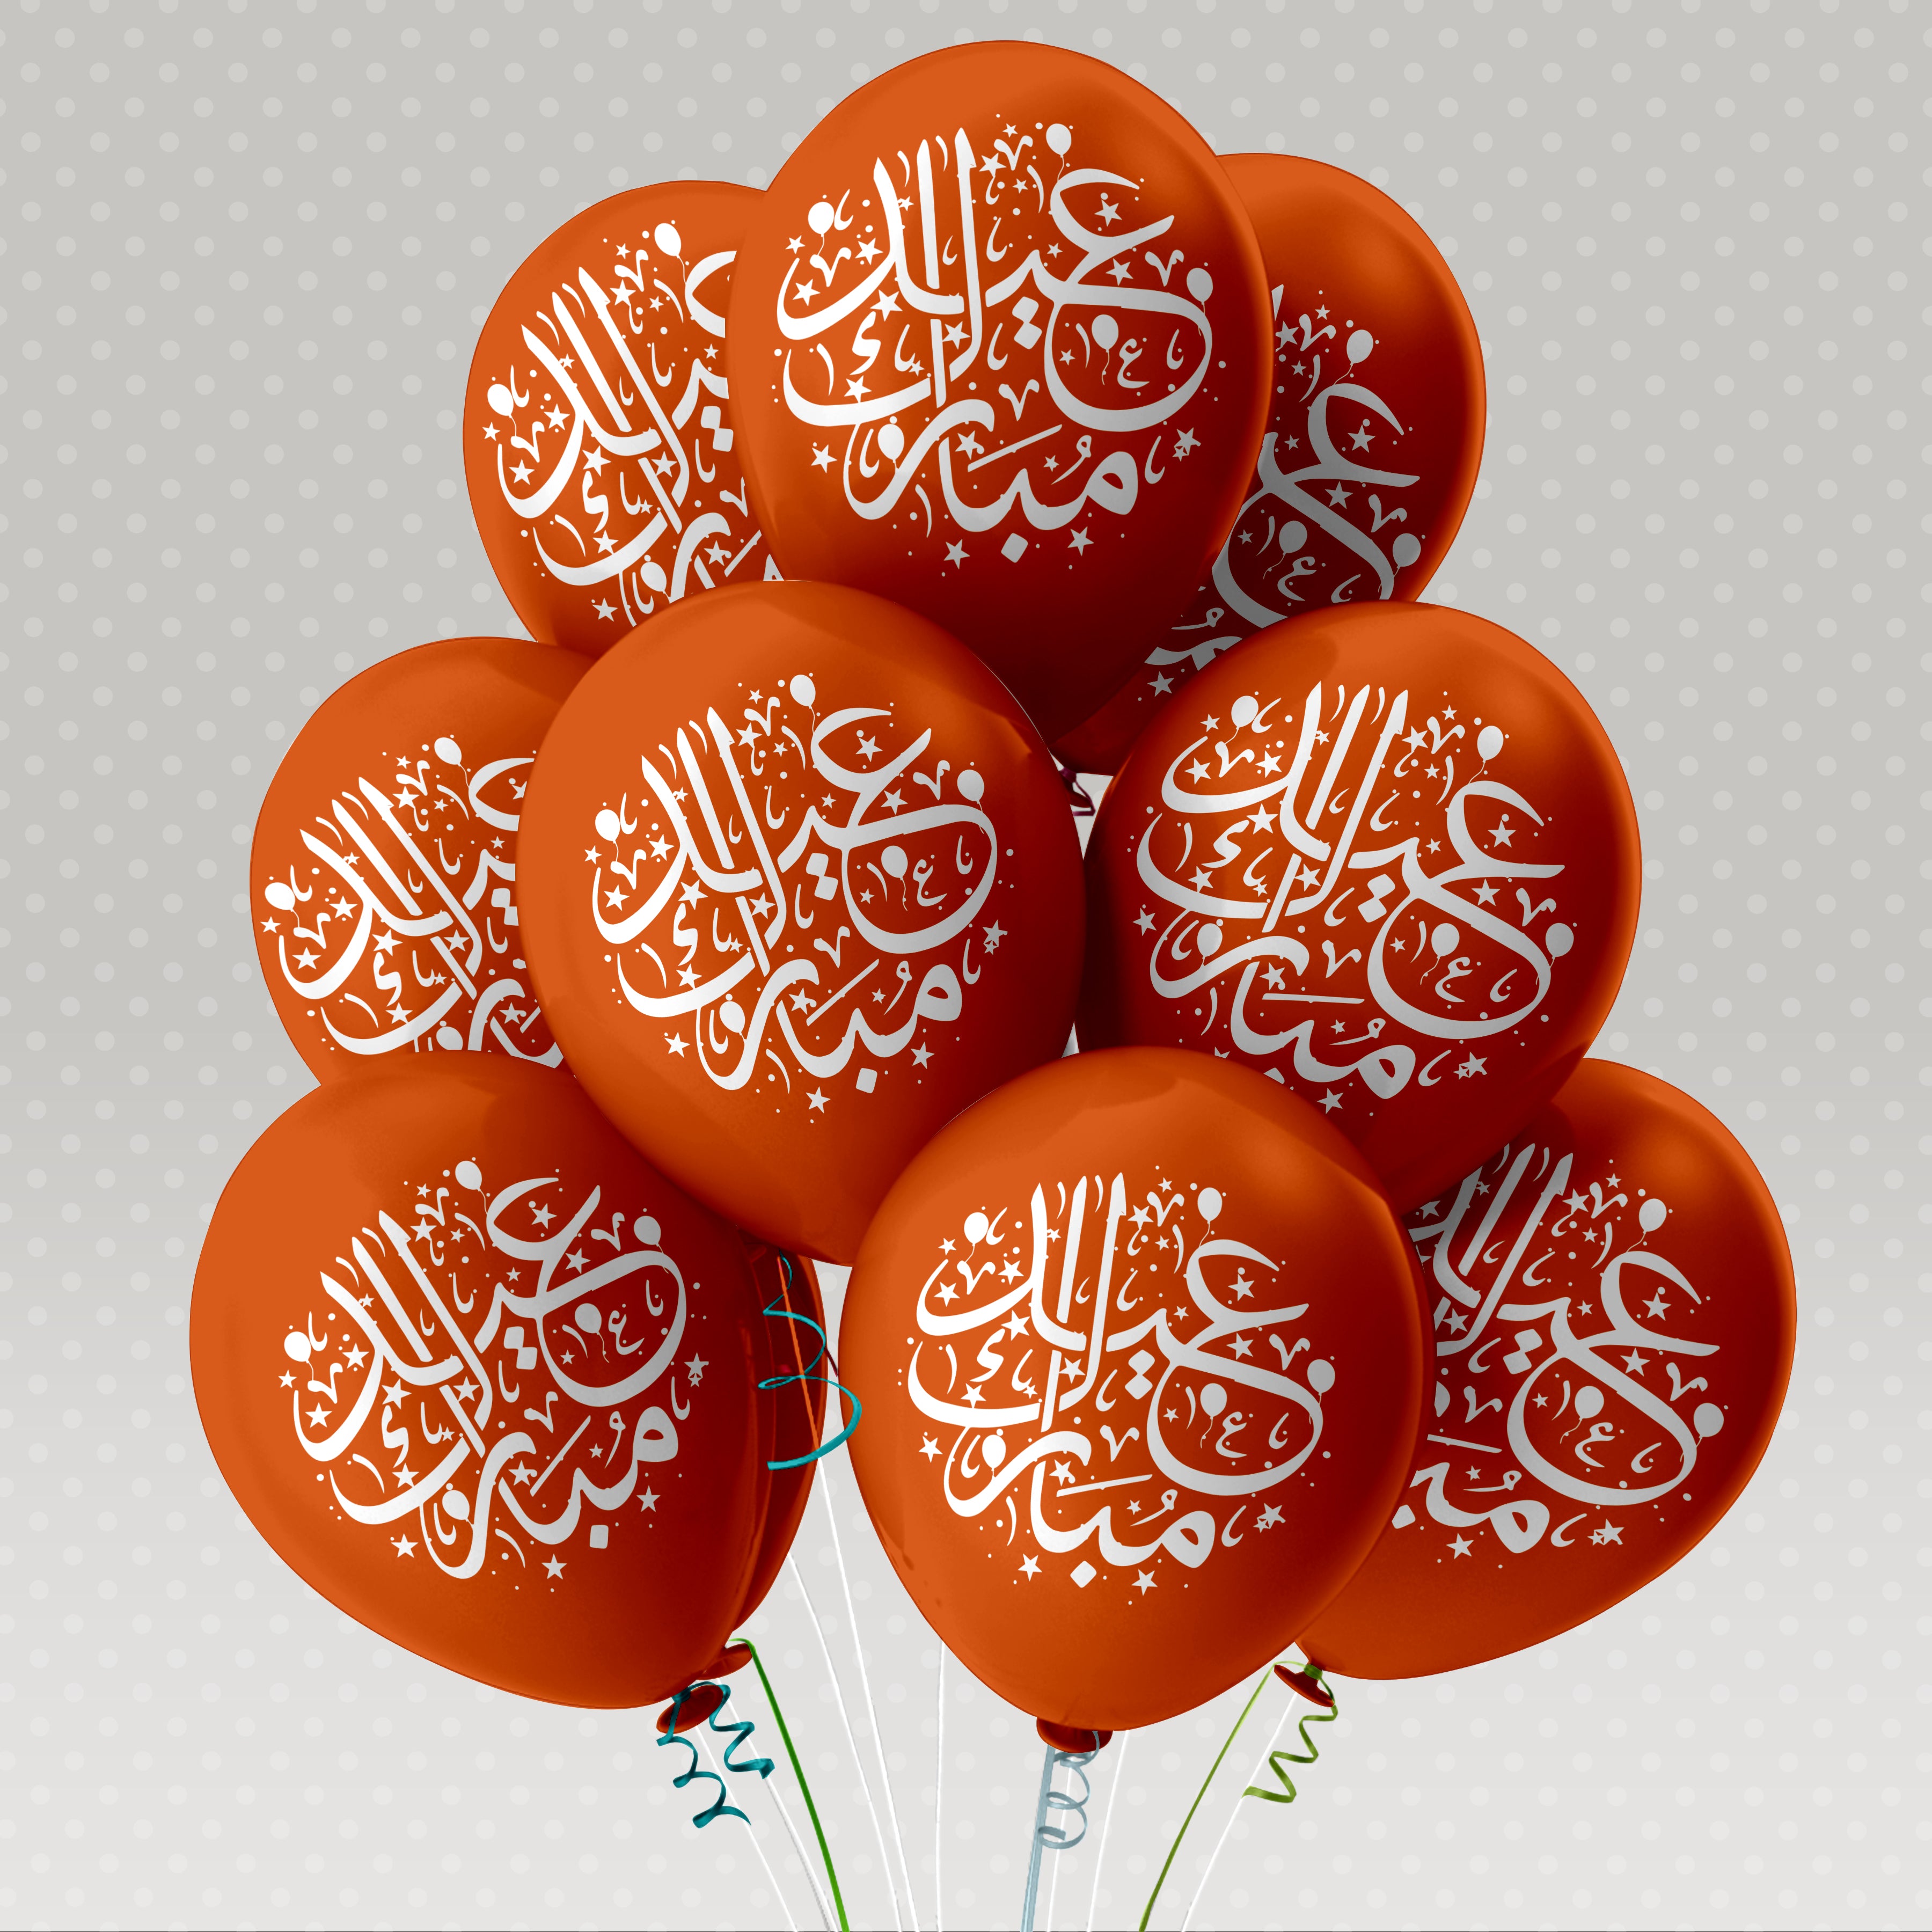 100 x Eid Mubarak Luftballon, Luftballons Druck, Luftballons mit Eid Motiv, Ballon